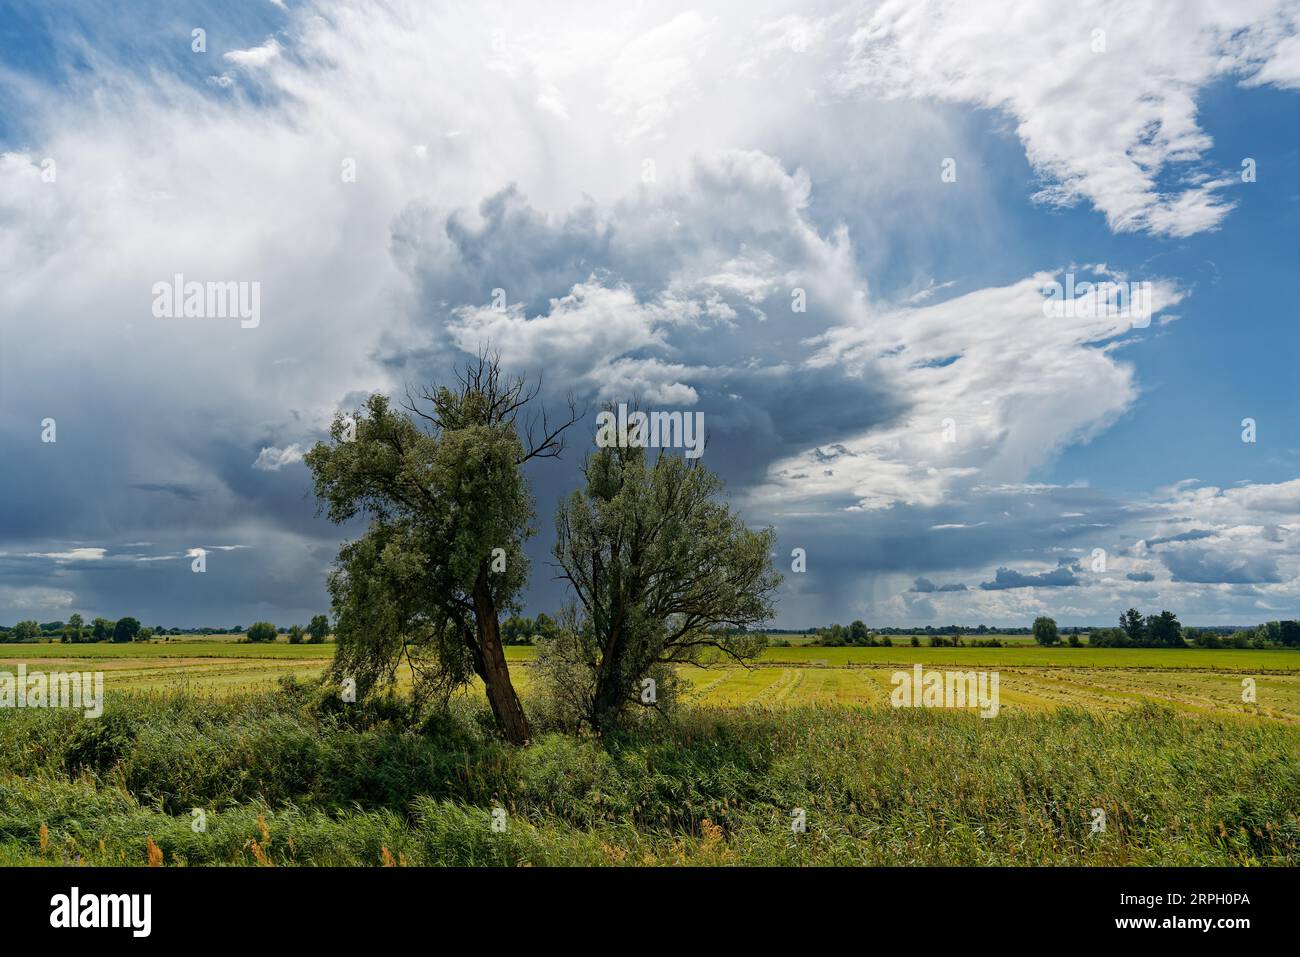 Große Gewitterfront mit bedrohlich aussehender Wolkenbildung, aus der teilweise Regen fällt, über eine Flussauen mit Wiesen, Büschen und einem Baum Stockfoto